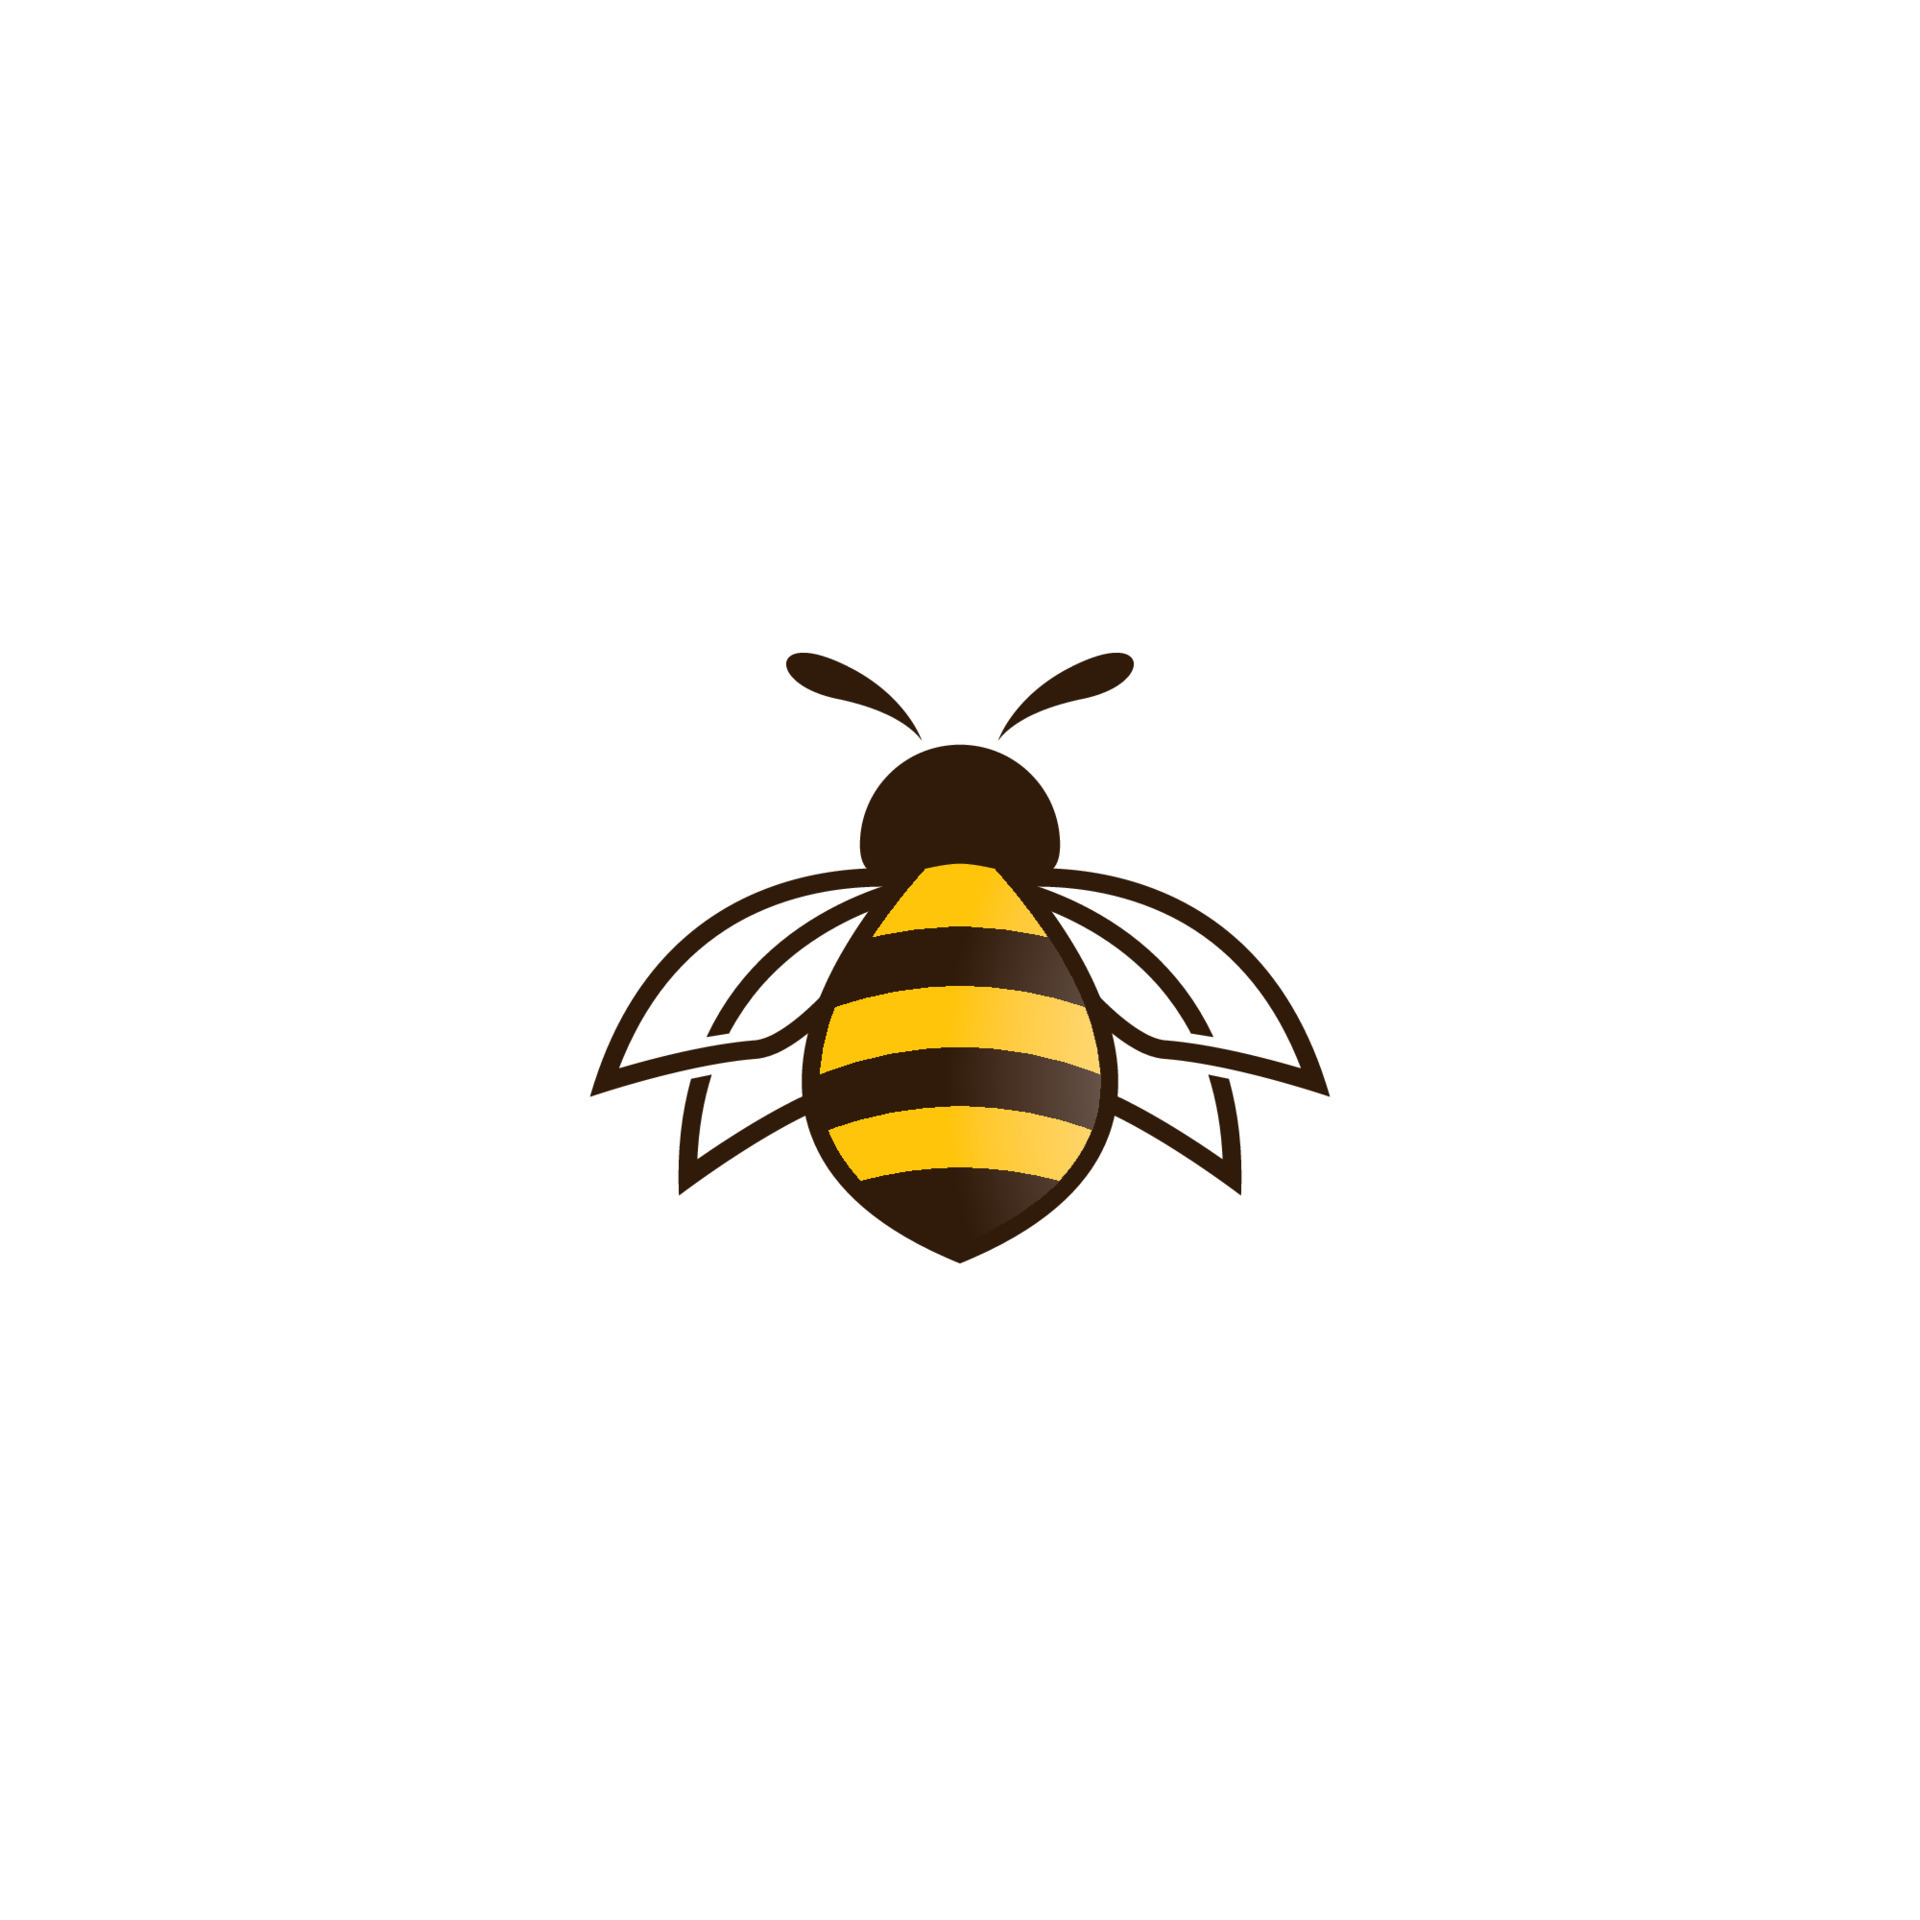 Bee logo images 14422484 Vector Art at Vecteezy